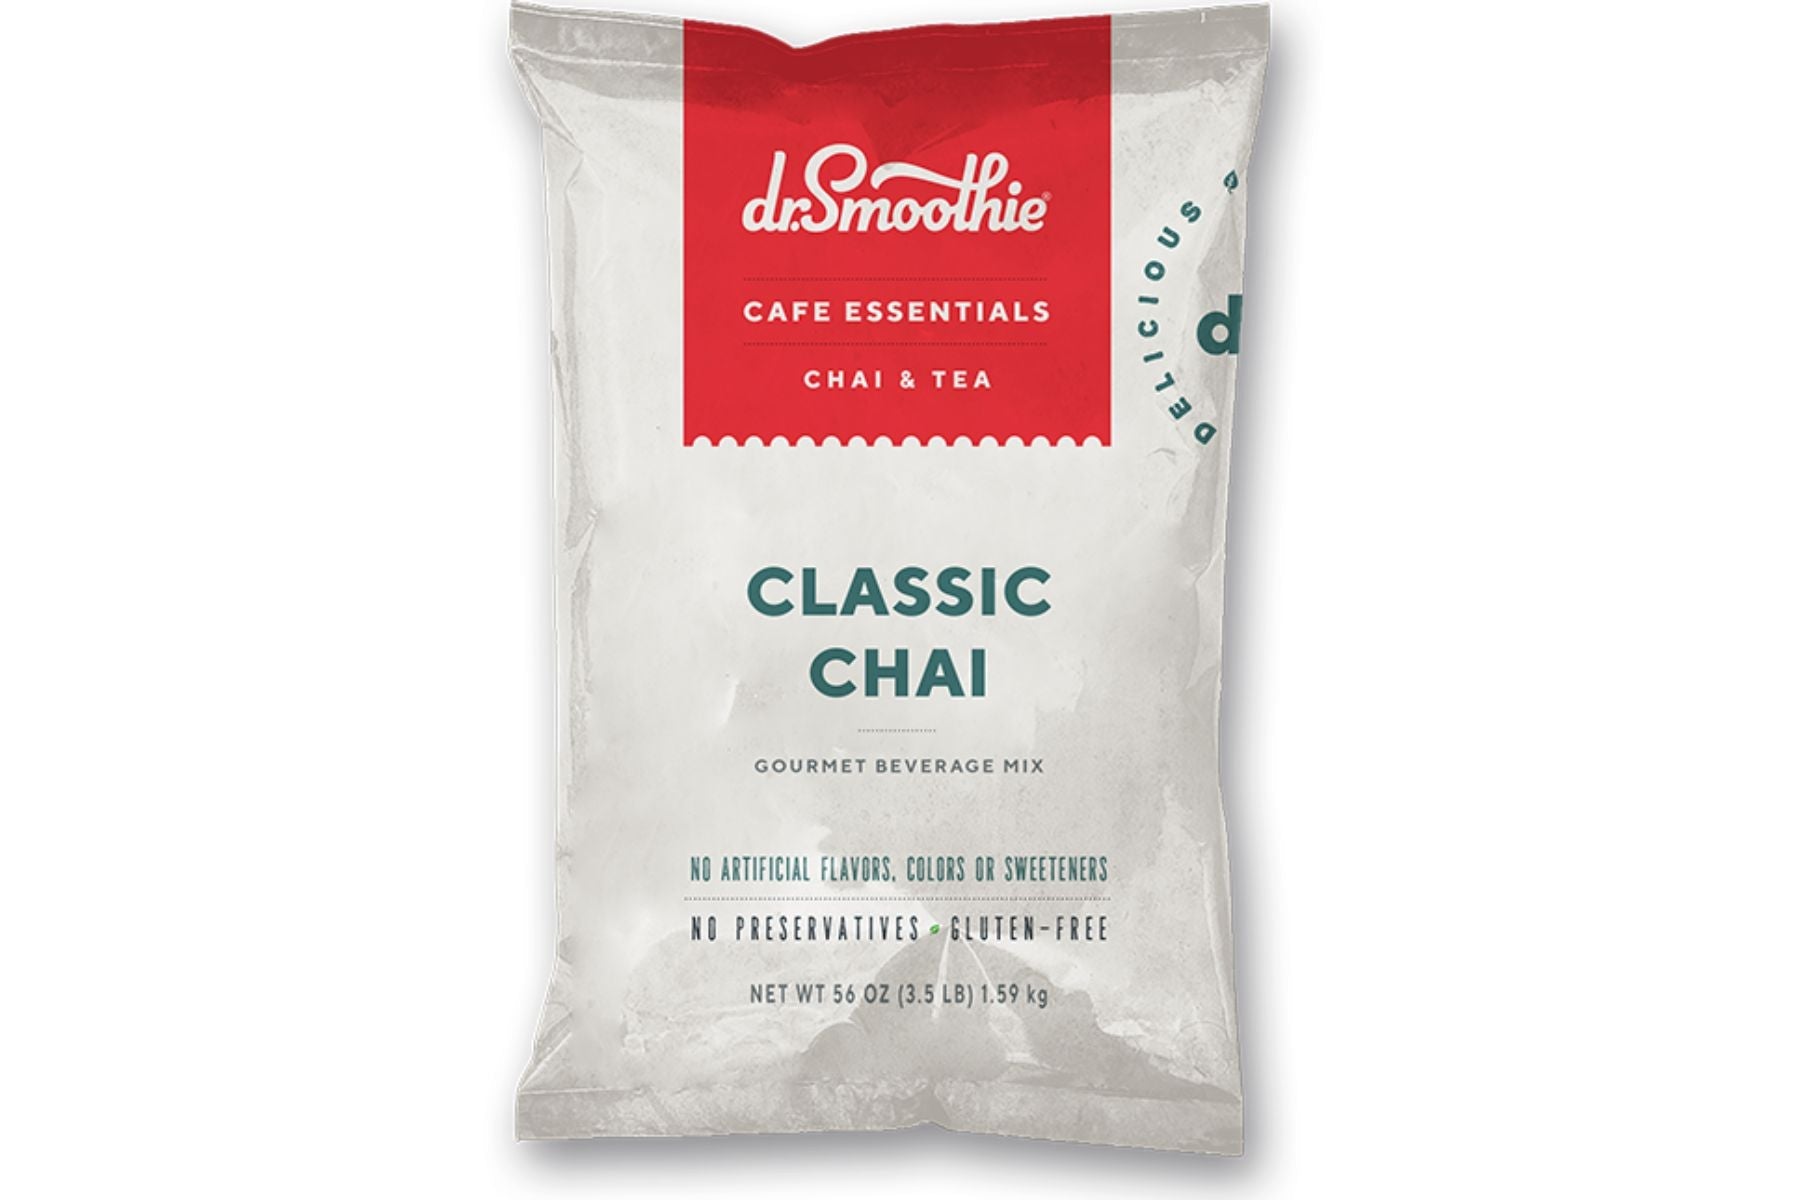 Dr. Smoothie Cafe Essentials Chai & Tea - 3.5lb Bulk Bag: Classic Chai